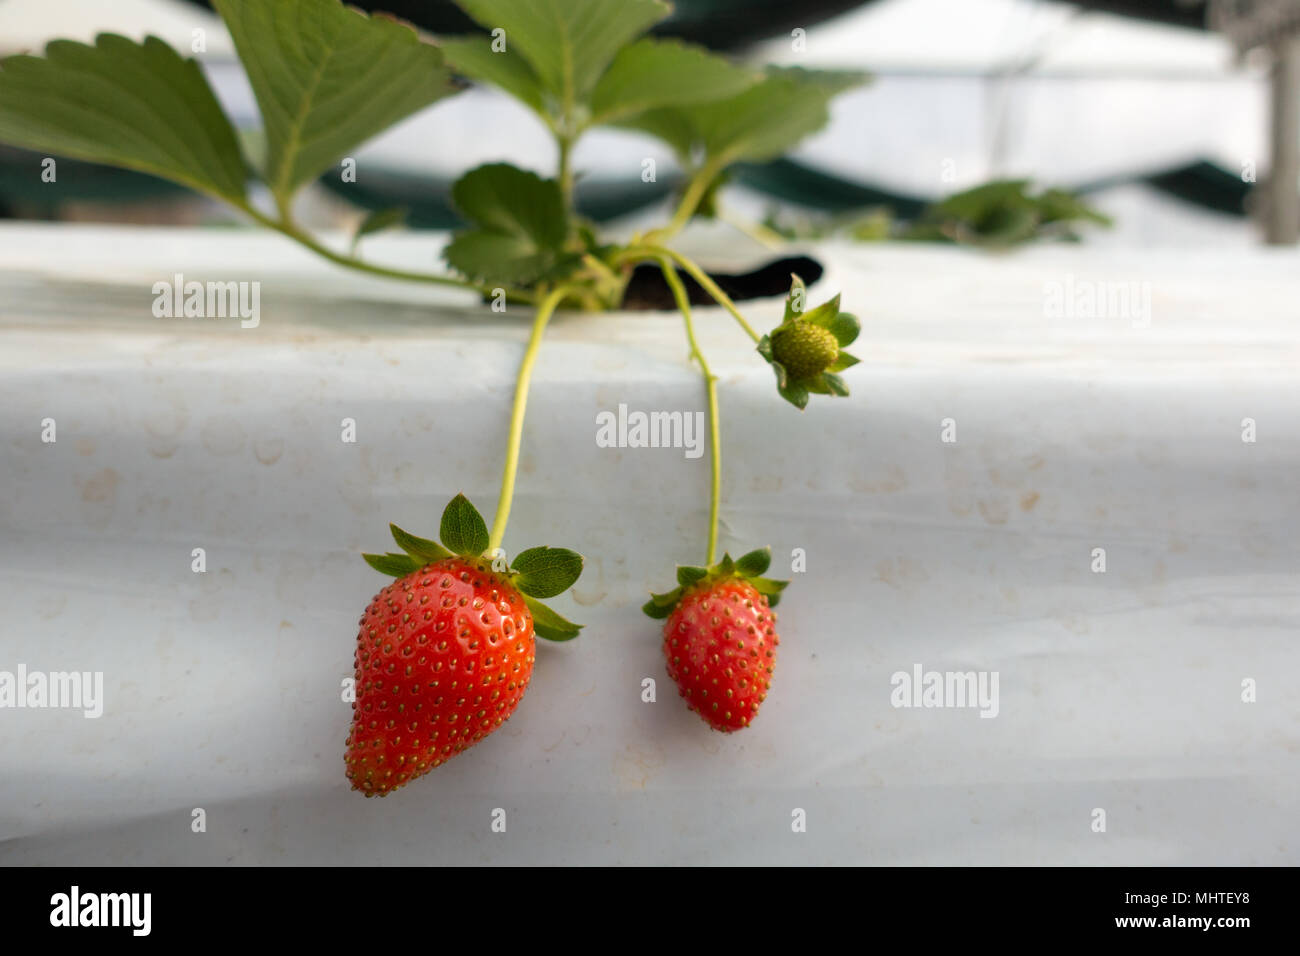 Hydroponic strawberry Farm. Hydroponics Methode der wachsenden Pflanzen  Erdbeere, in Wasser, ohne Boden. Hydroponic Kopfsalat in Hydroponischen  Rohr Stockfotografie - Alamy